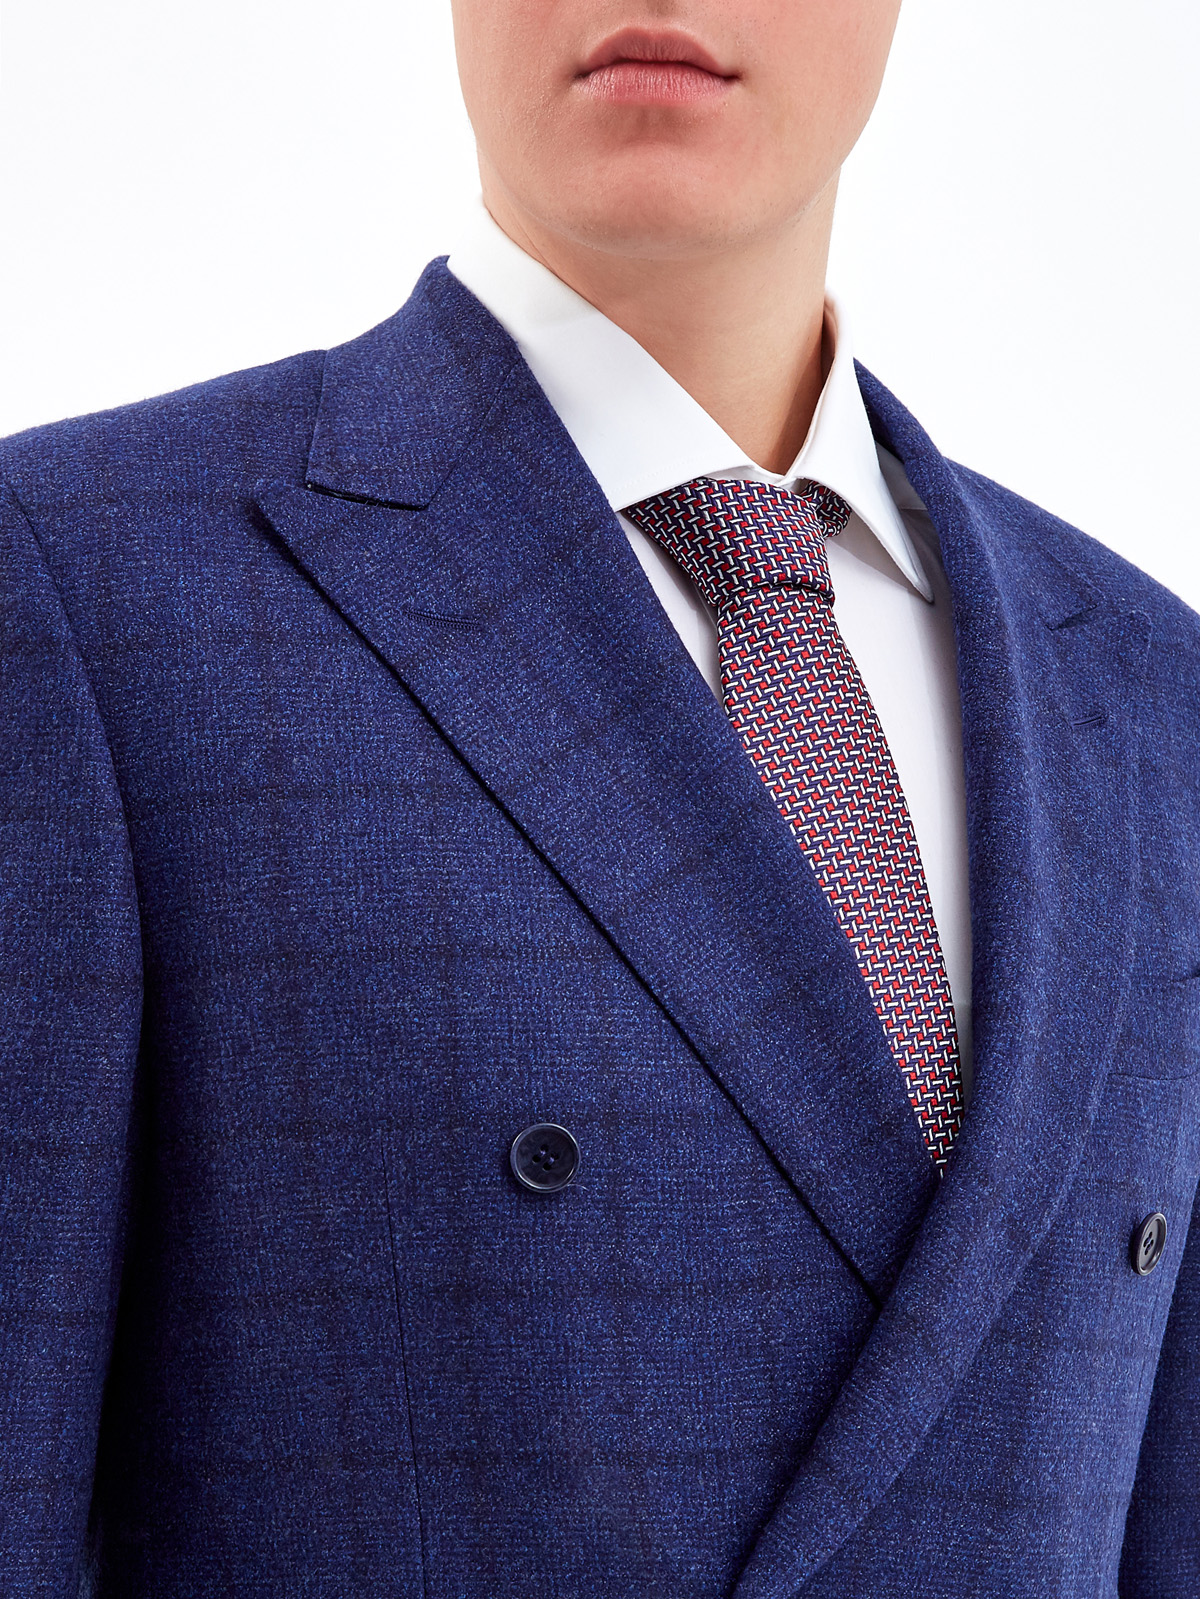 Шелковый галстук с текстурным геометрическим принтом CANALI, цвет мульти, размер M - фото 2